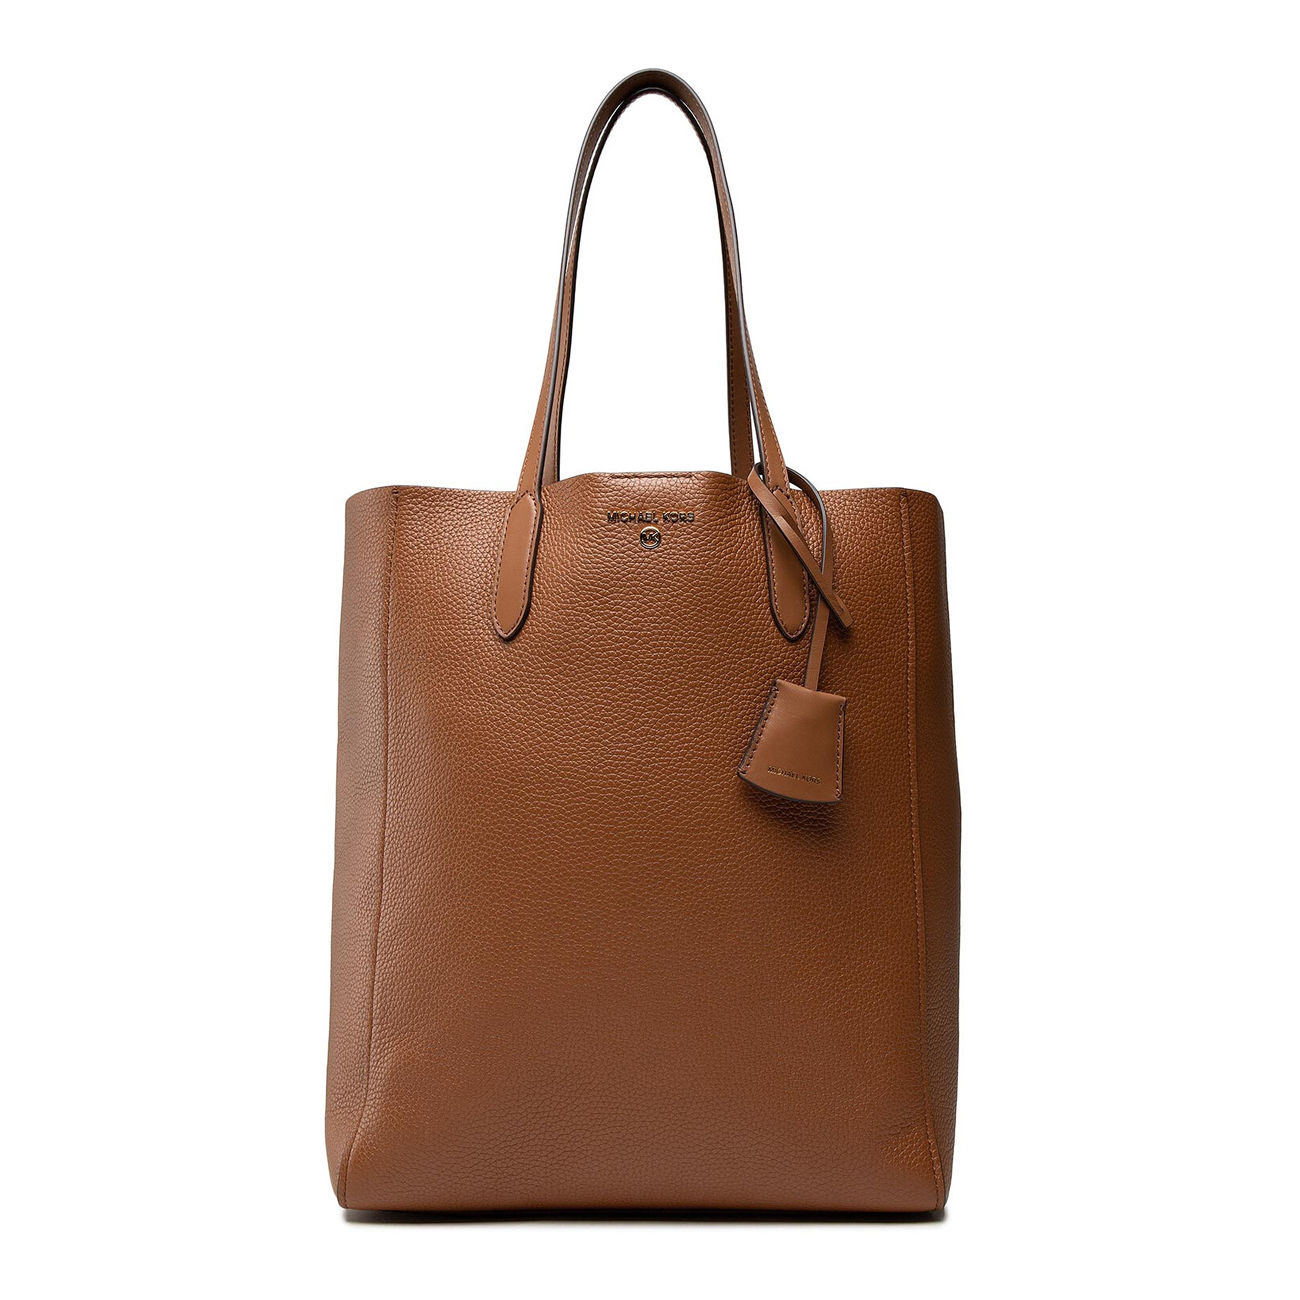 Michael Kors Women Large Leather Suede Shoulder Tote Bag Handbag